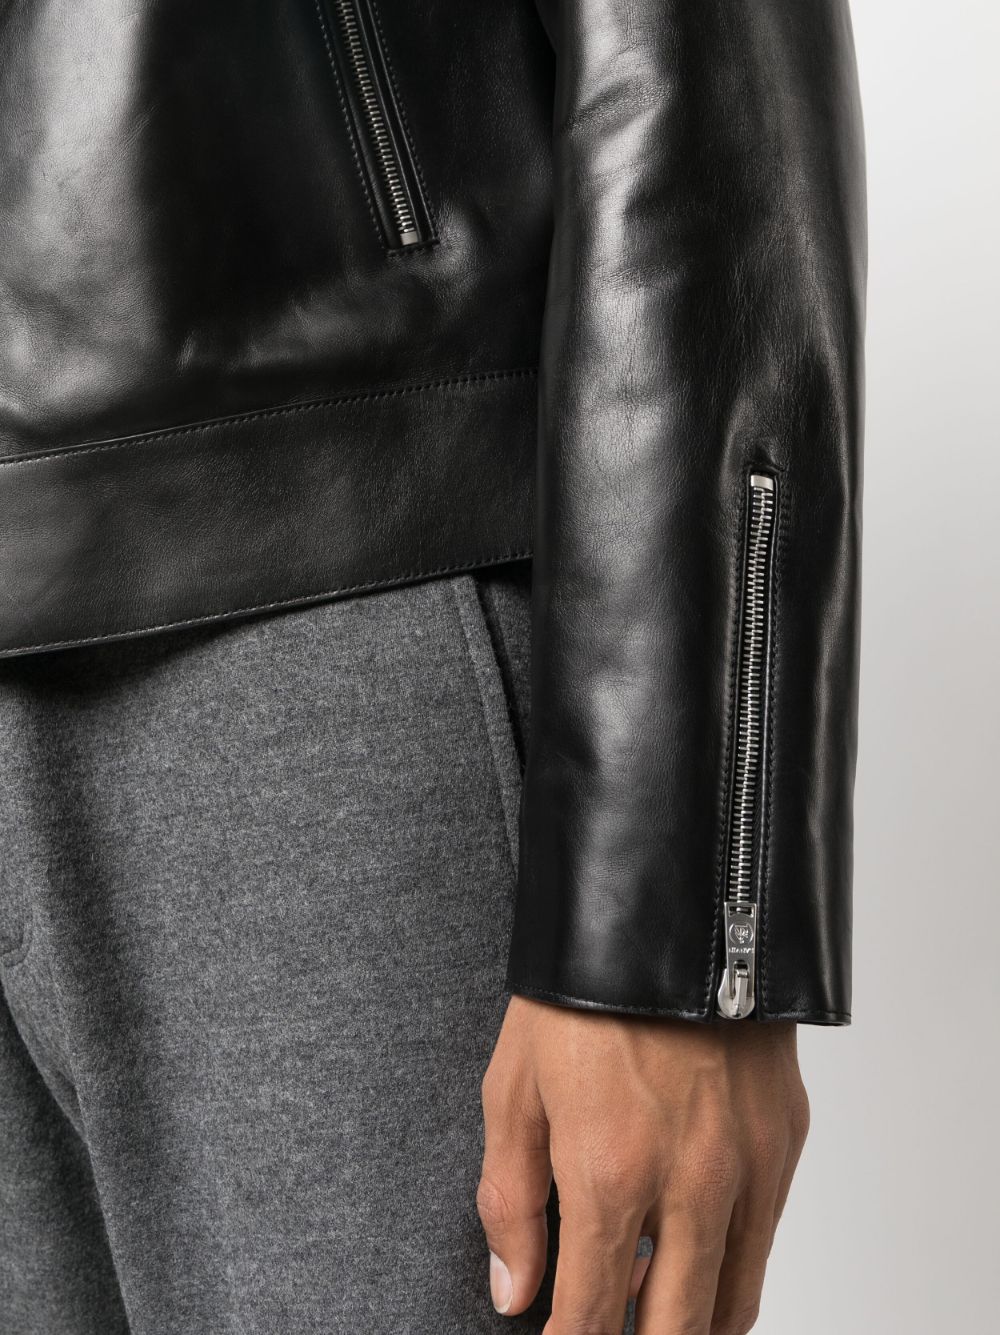 Lanvin zip-up Leather Jacket - Farfetch